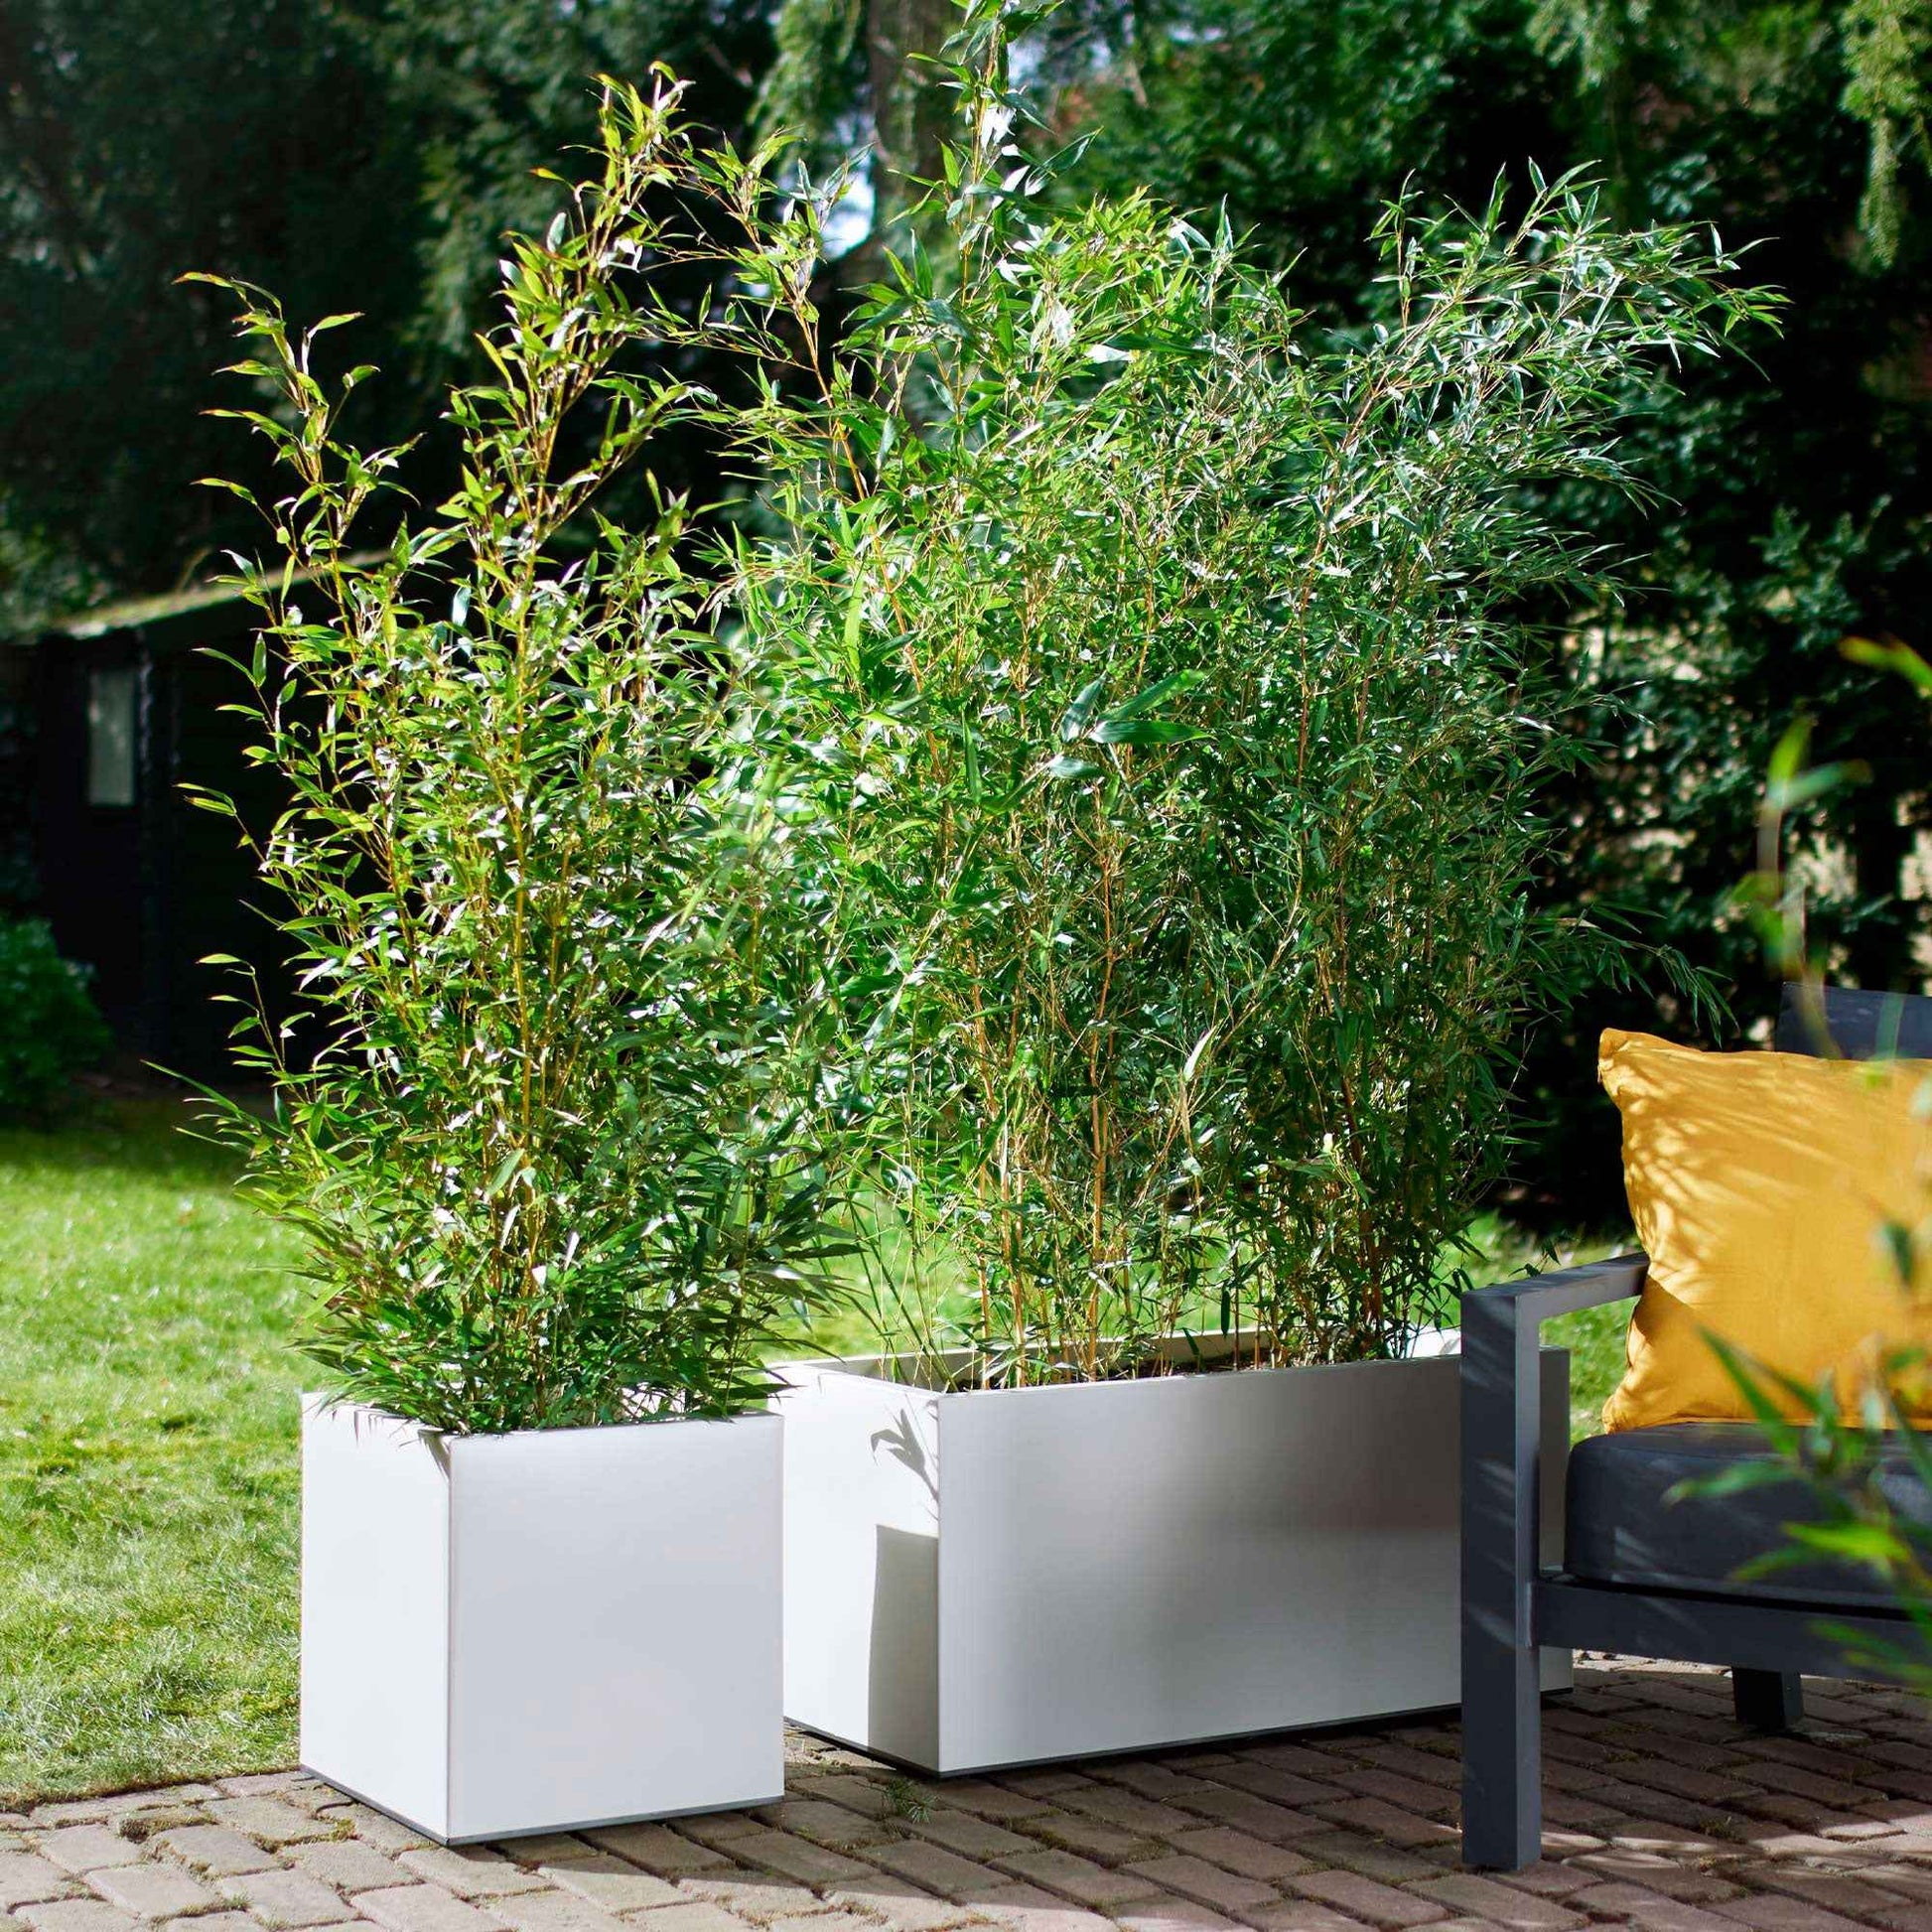 Elho bac à plantes Vivo Matt Finish carré blanc avec roues - Pot pour l'intérieur et l'extérieur - Elho